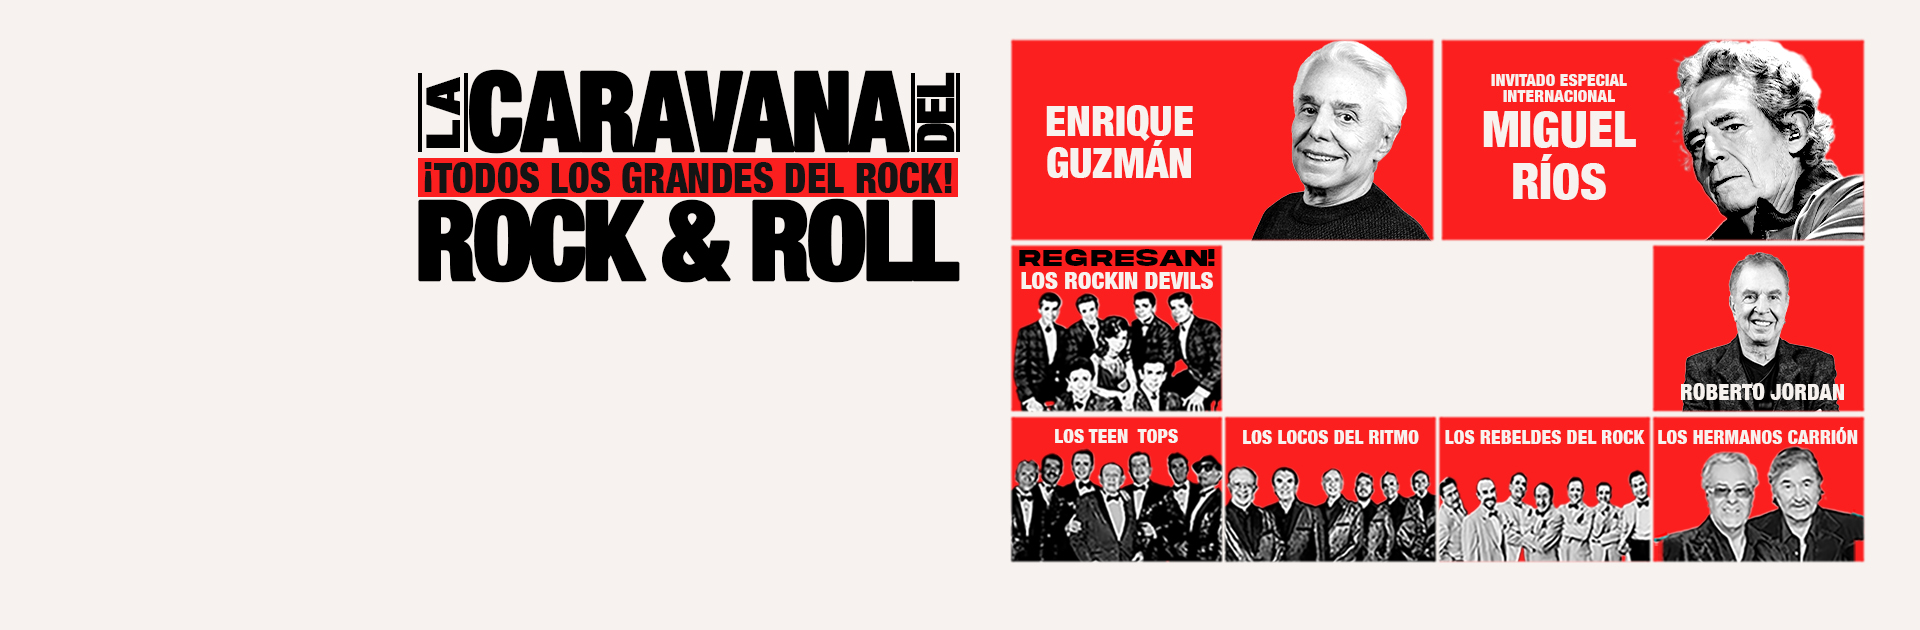 La Caravana del Rock & Roll Auditorio Nacional